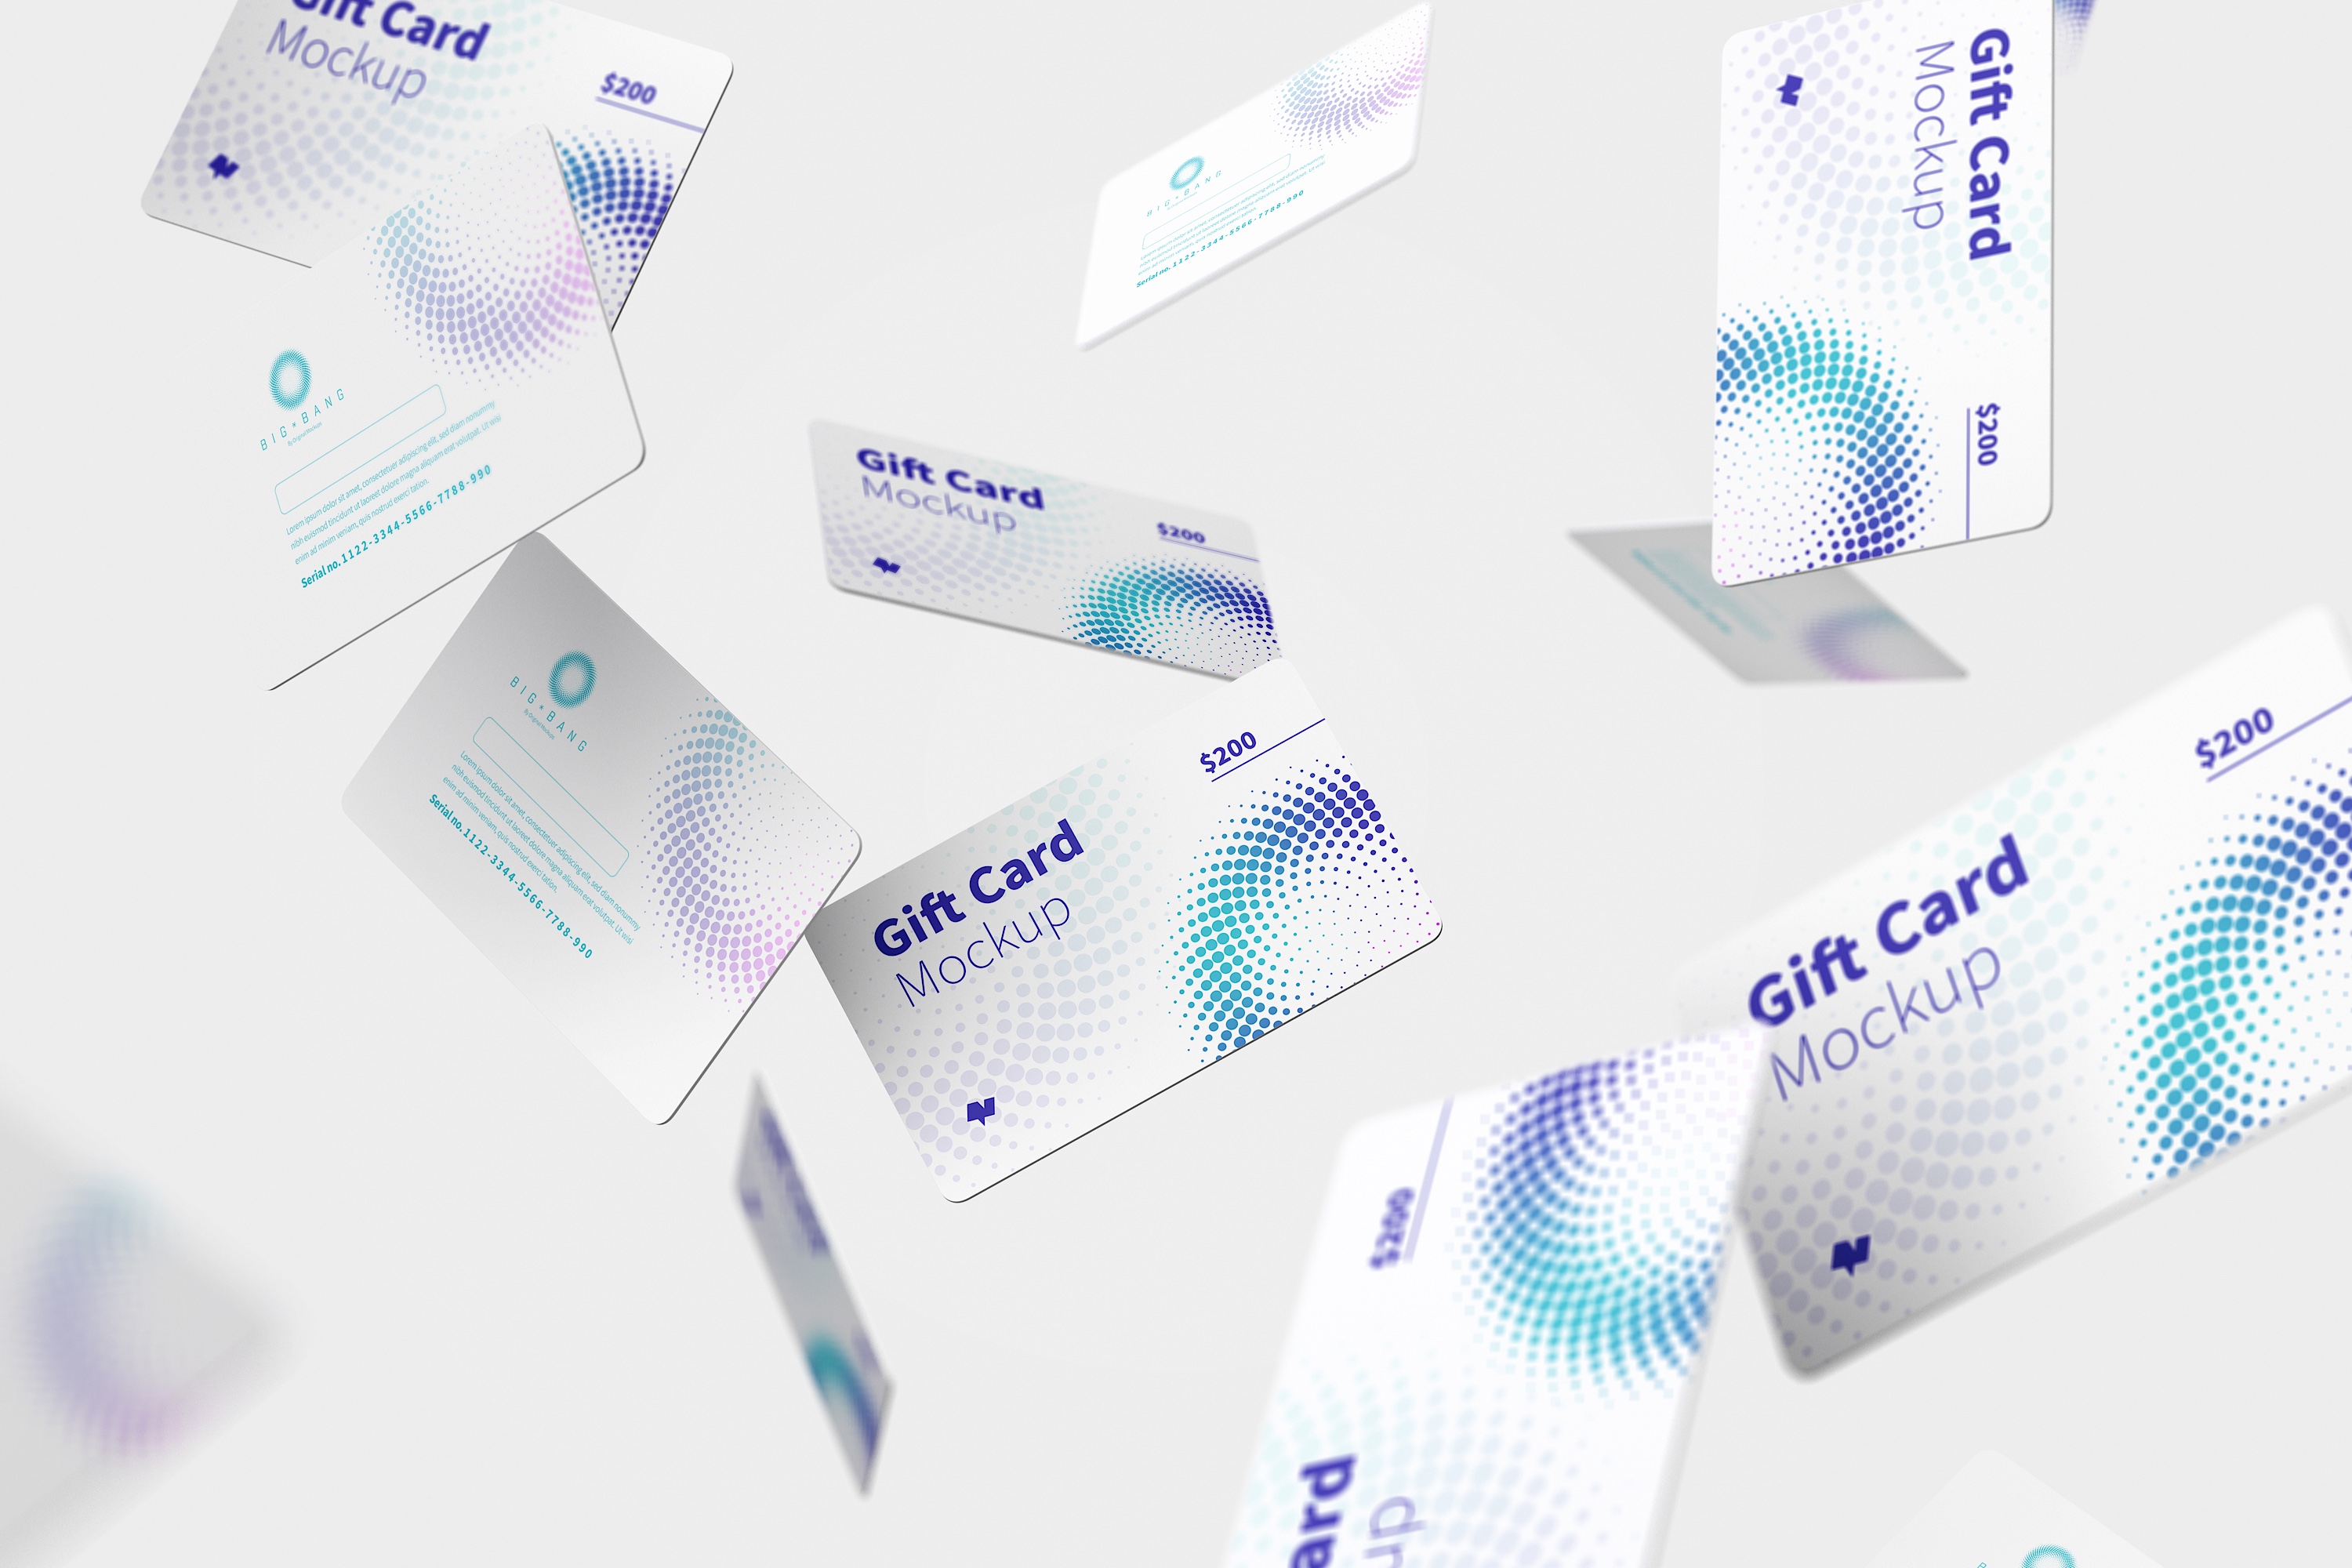 礼品卡积分卡卡片设计设计多视角预览样机模板05 Gift Card Mockup 05插图